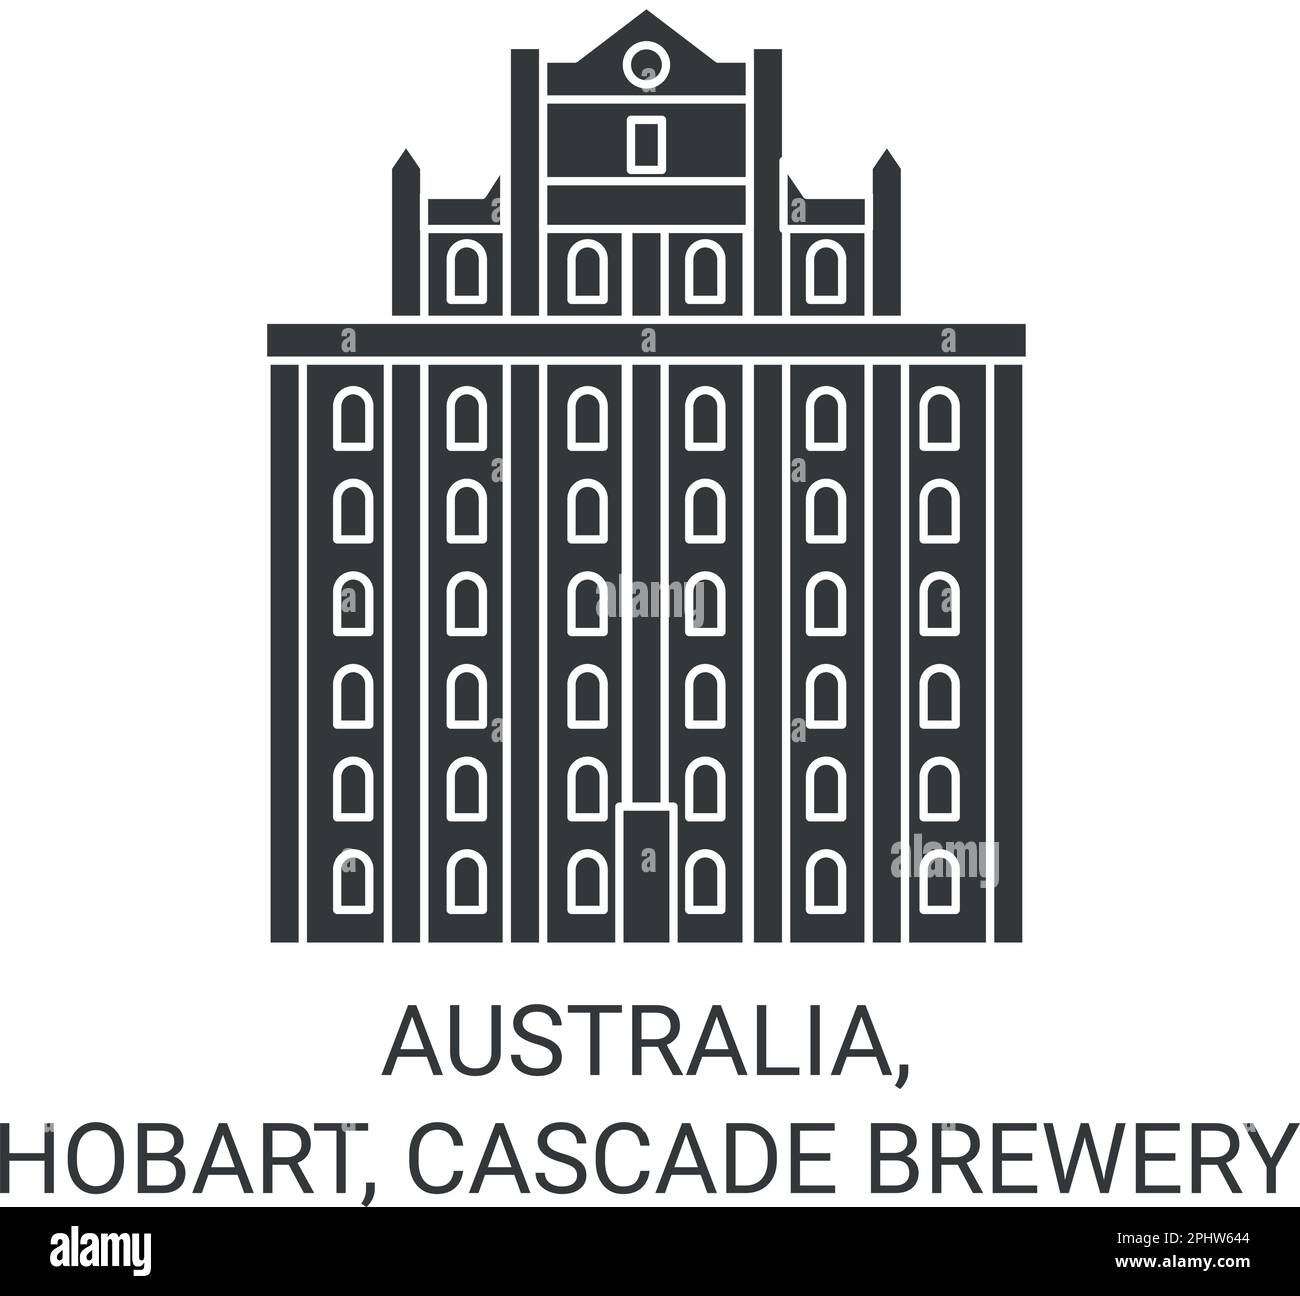 Australia, Hobart, Cascade Brewery ilustración vectorial de referencia de viaje Ilustración del Vector